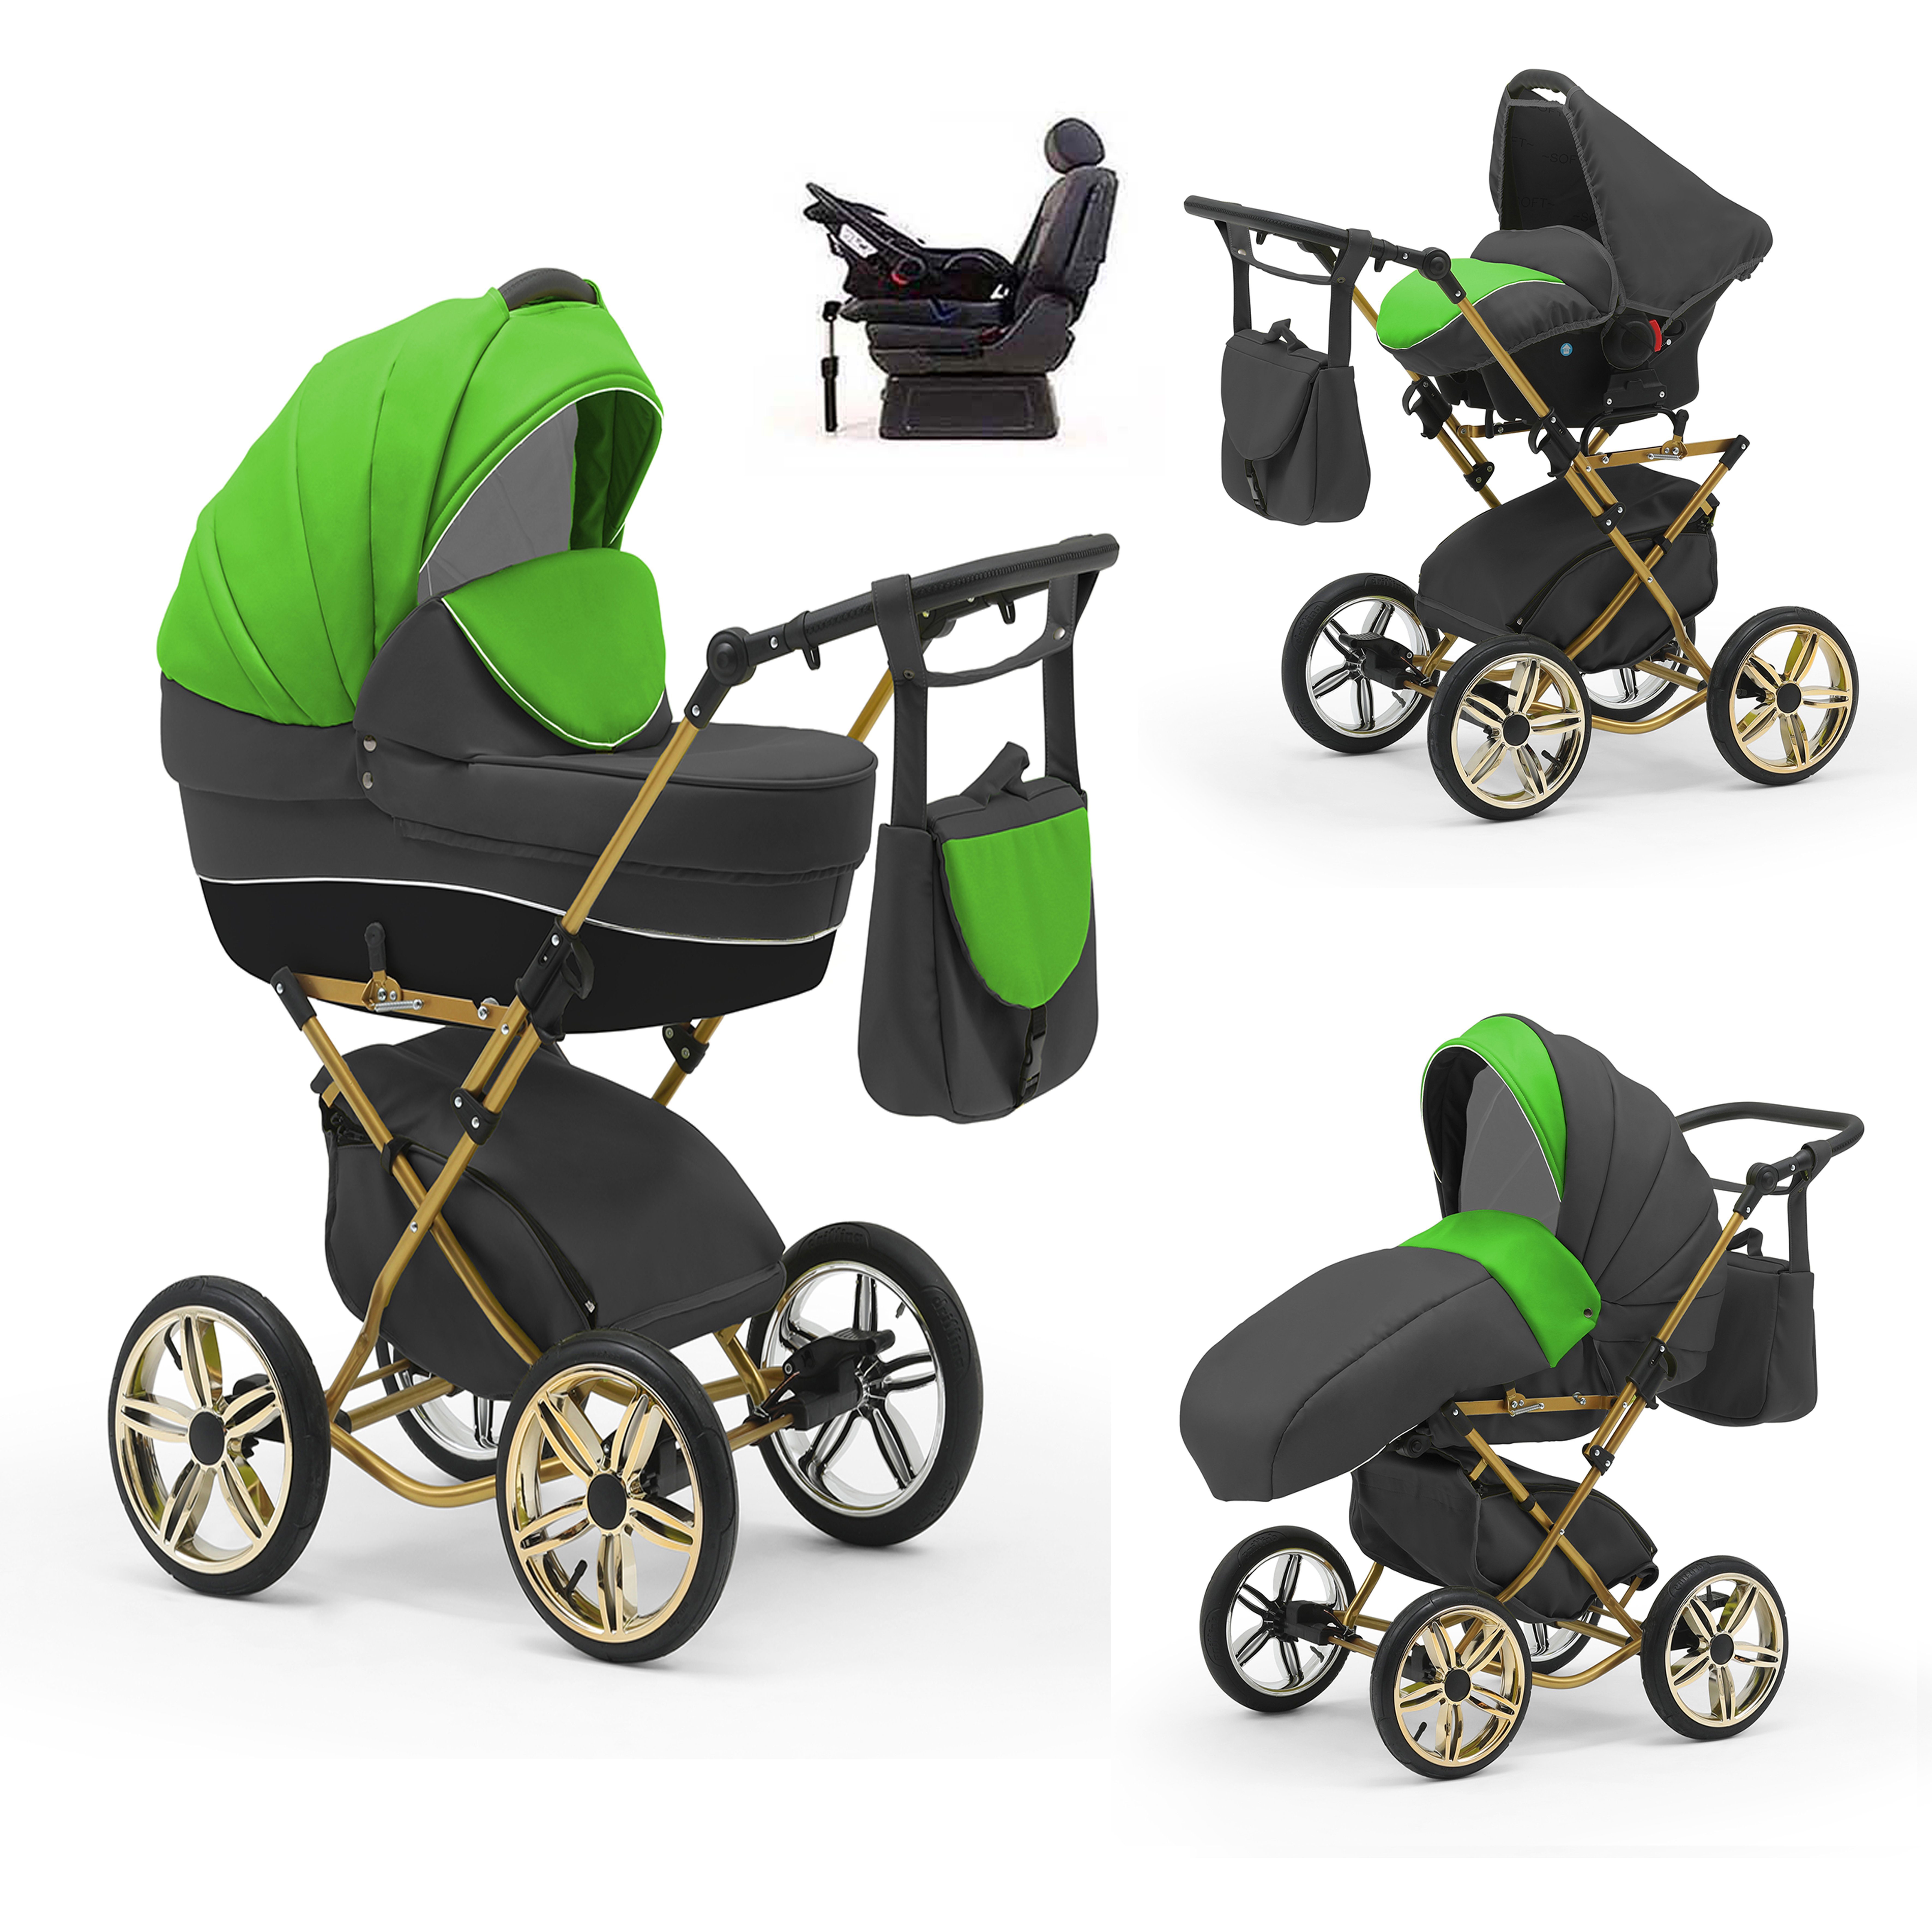 babies-on-wheels Kombi-Kinderwagen Sorento 4 in 1 inkl. Autositz und Iso Base - 14 Teile - in 10 Designs Grün-Grau